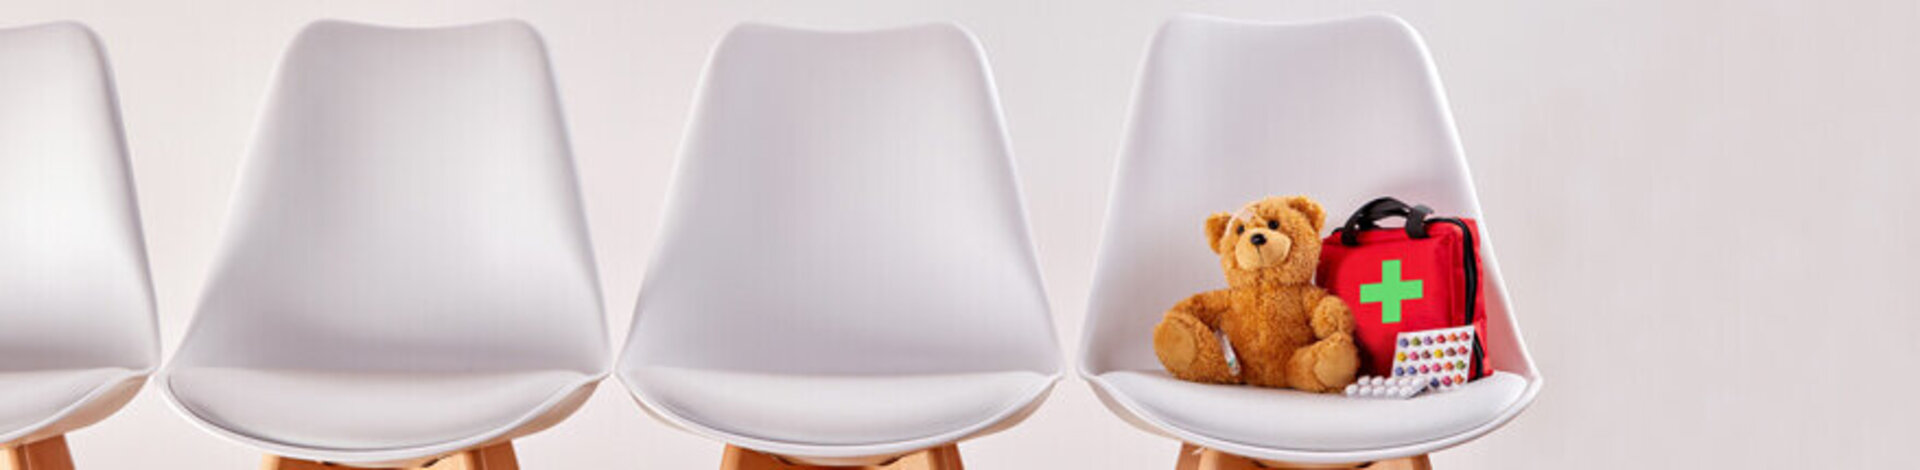 Das Bild zeigt vier weiße nebeneinander stehende Stühle. Auf dem Stuhl ganz rechts befindet sich ein Teddybär und ein kleiner Erste-Hilfe-Rucksack. 